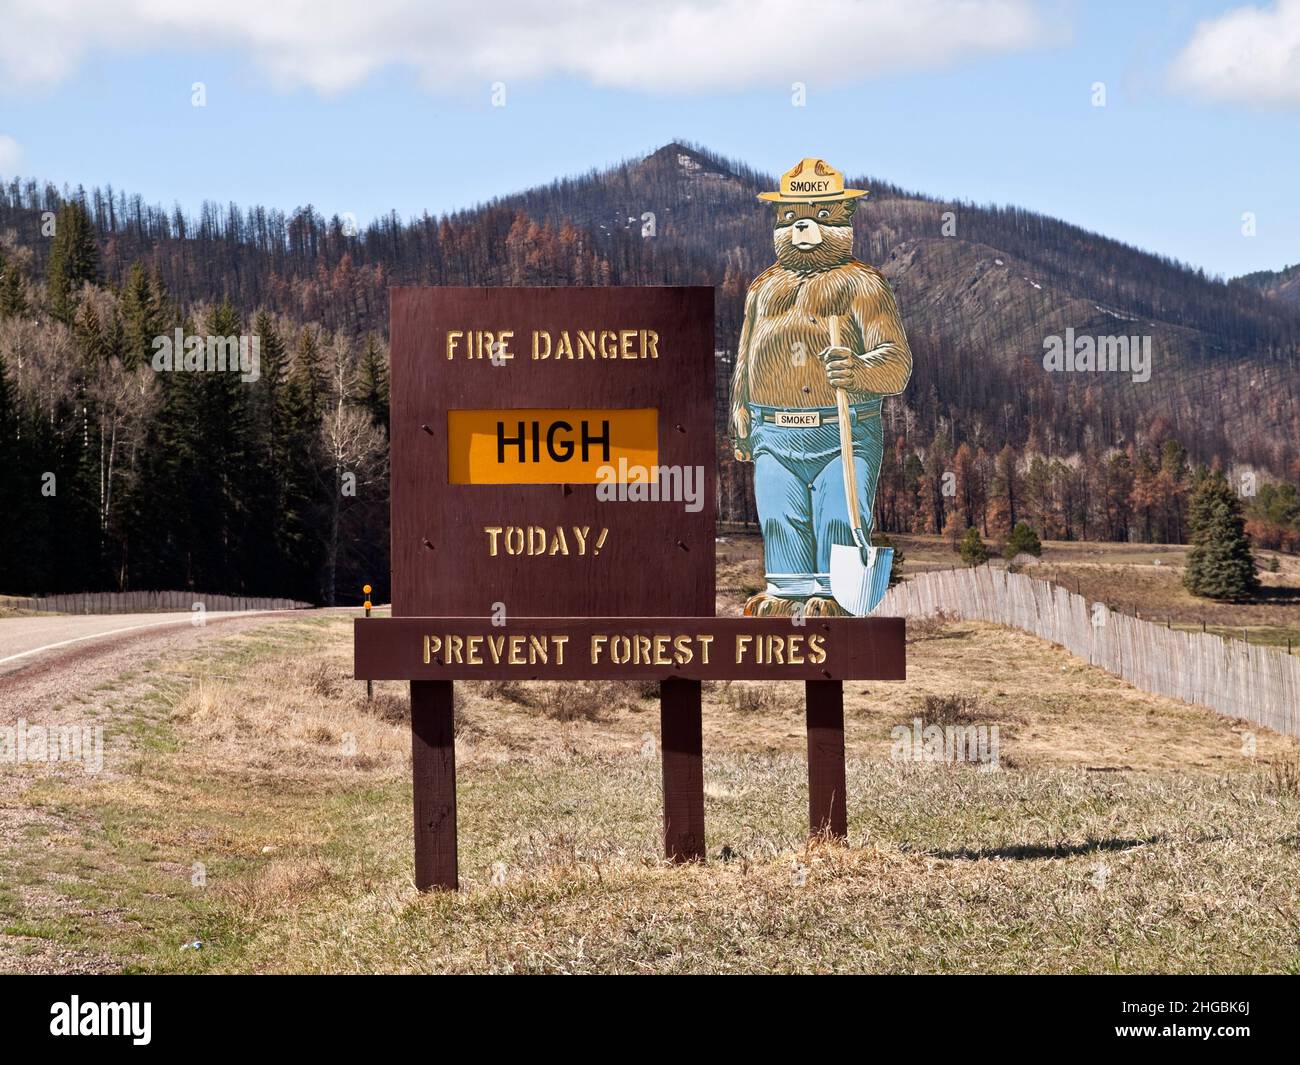 Smokey le panneau de prévention des incendies de forêt de l'ours avertit les touristes du danger élevé d'incendie le 12 avril 2012 à Santa Fe, Nouveau-Mexique, États-Unis. Banque D'Images